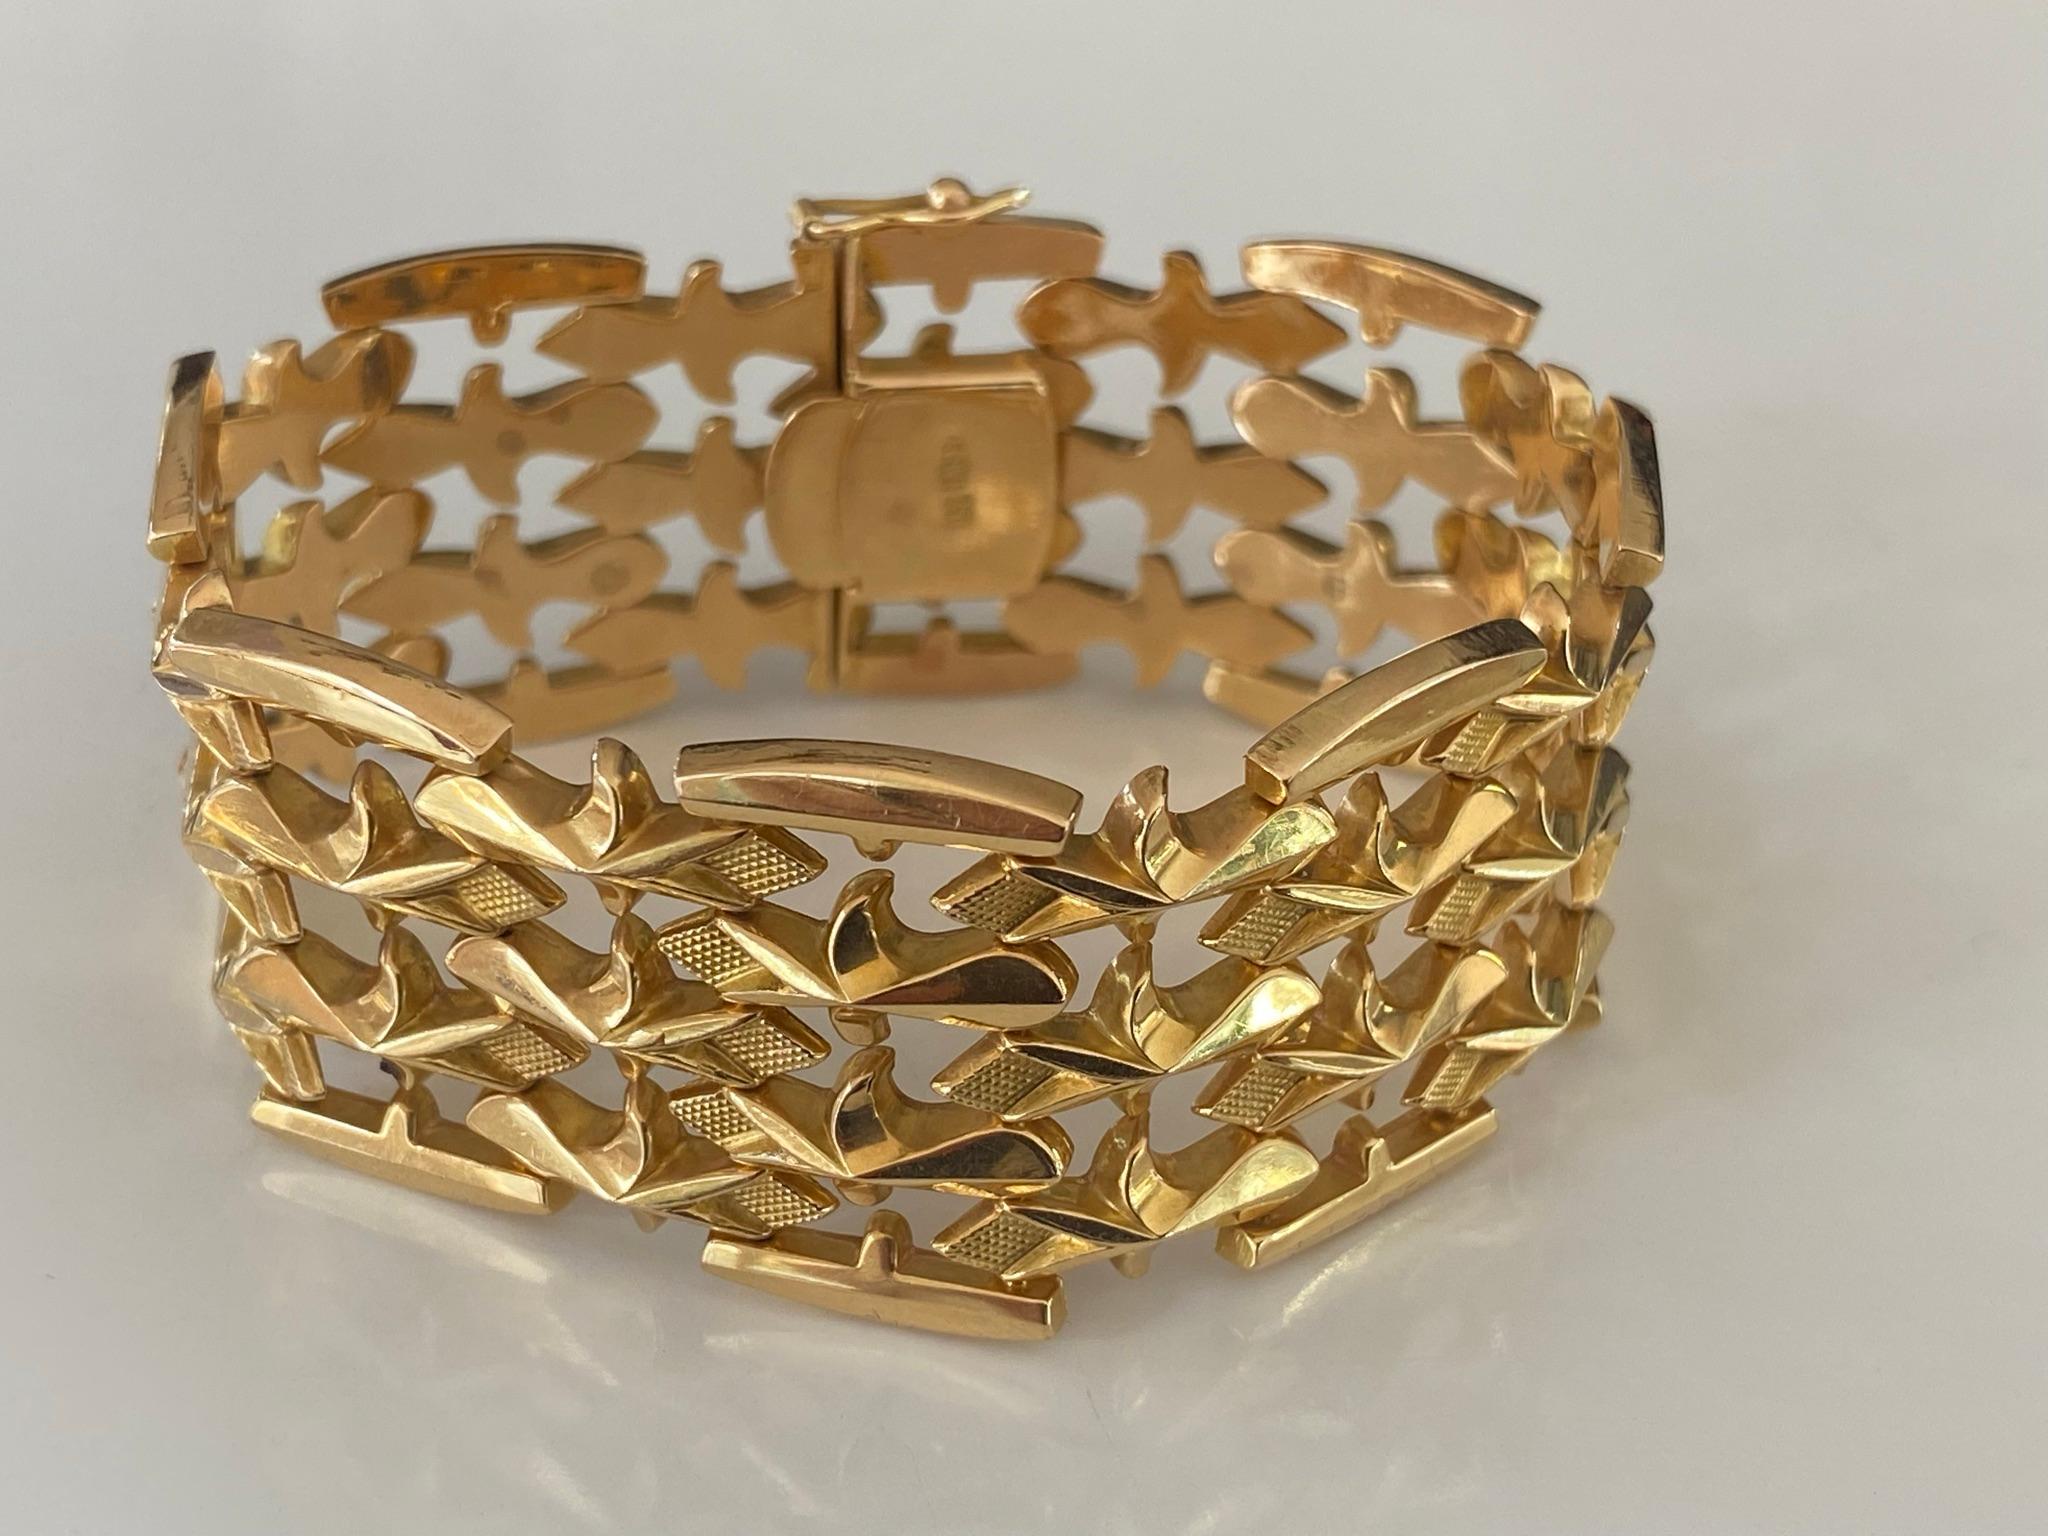 Ce magnifique bracelet à maillons repoussés, fabriqué à la main en or jaune 18 carats, présente un motif répétitif de fleurs de lys dans un design ajouré à quatre rangs. Fabriquées en Italie.  Le bracelet mesure 6,85 pouces et 1,15 pouce (26 mm) de